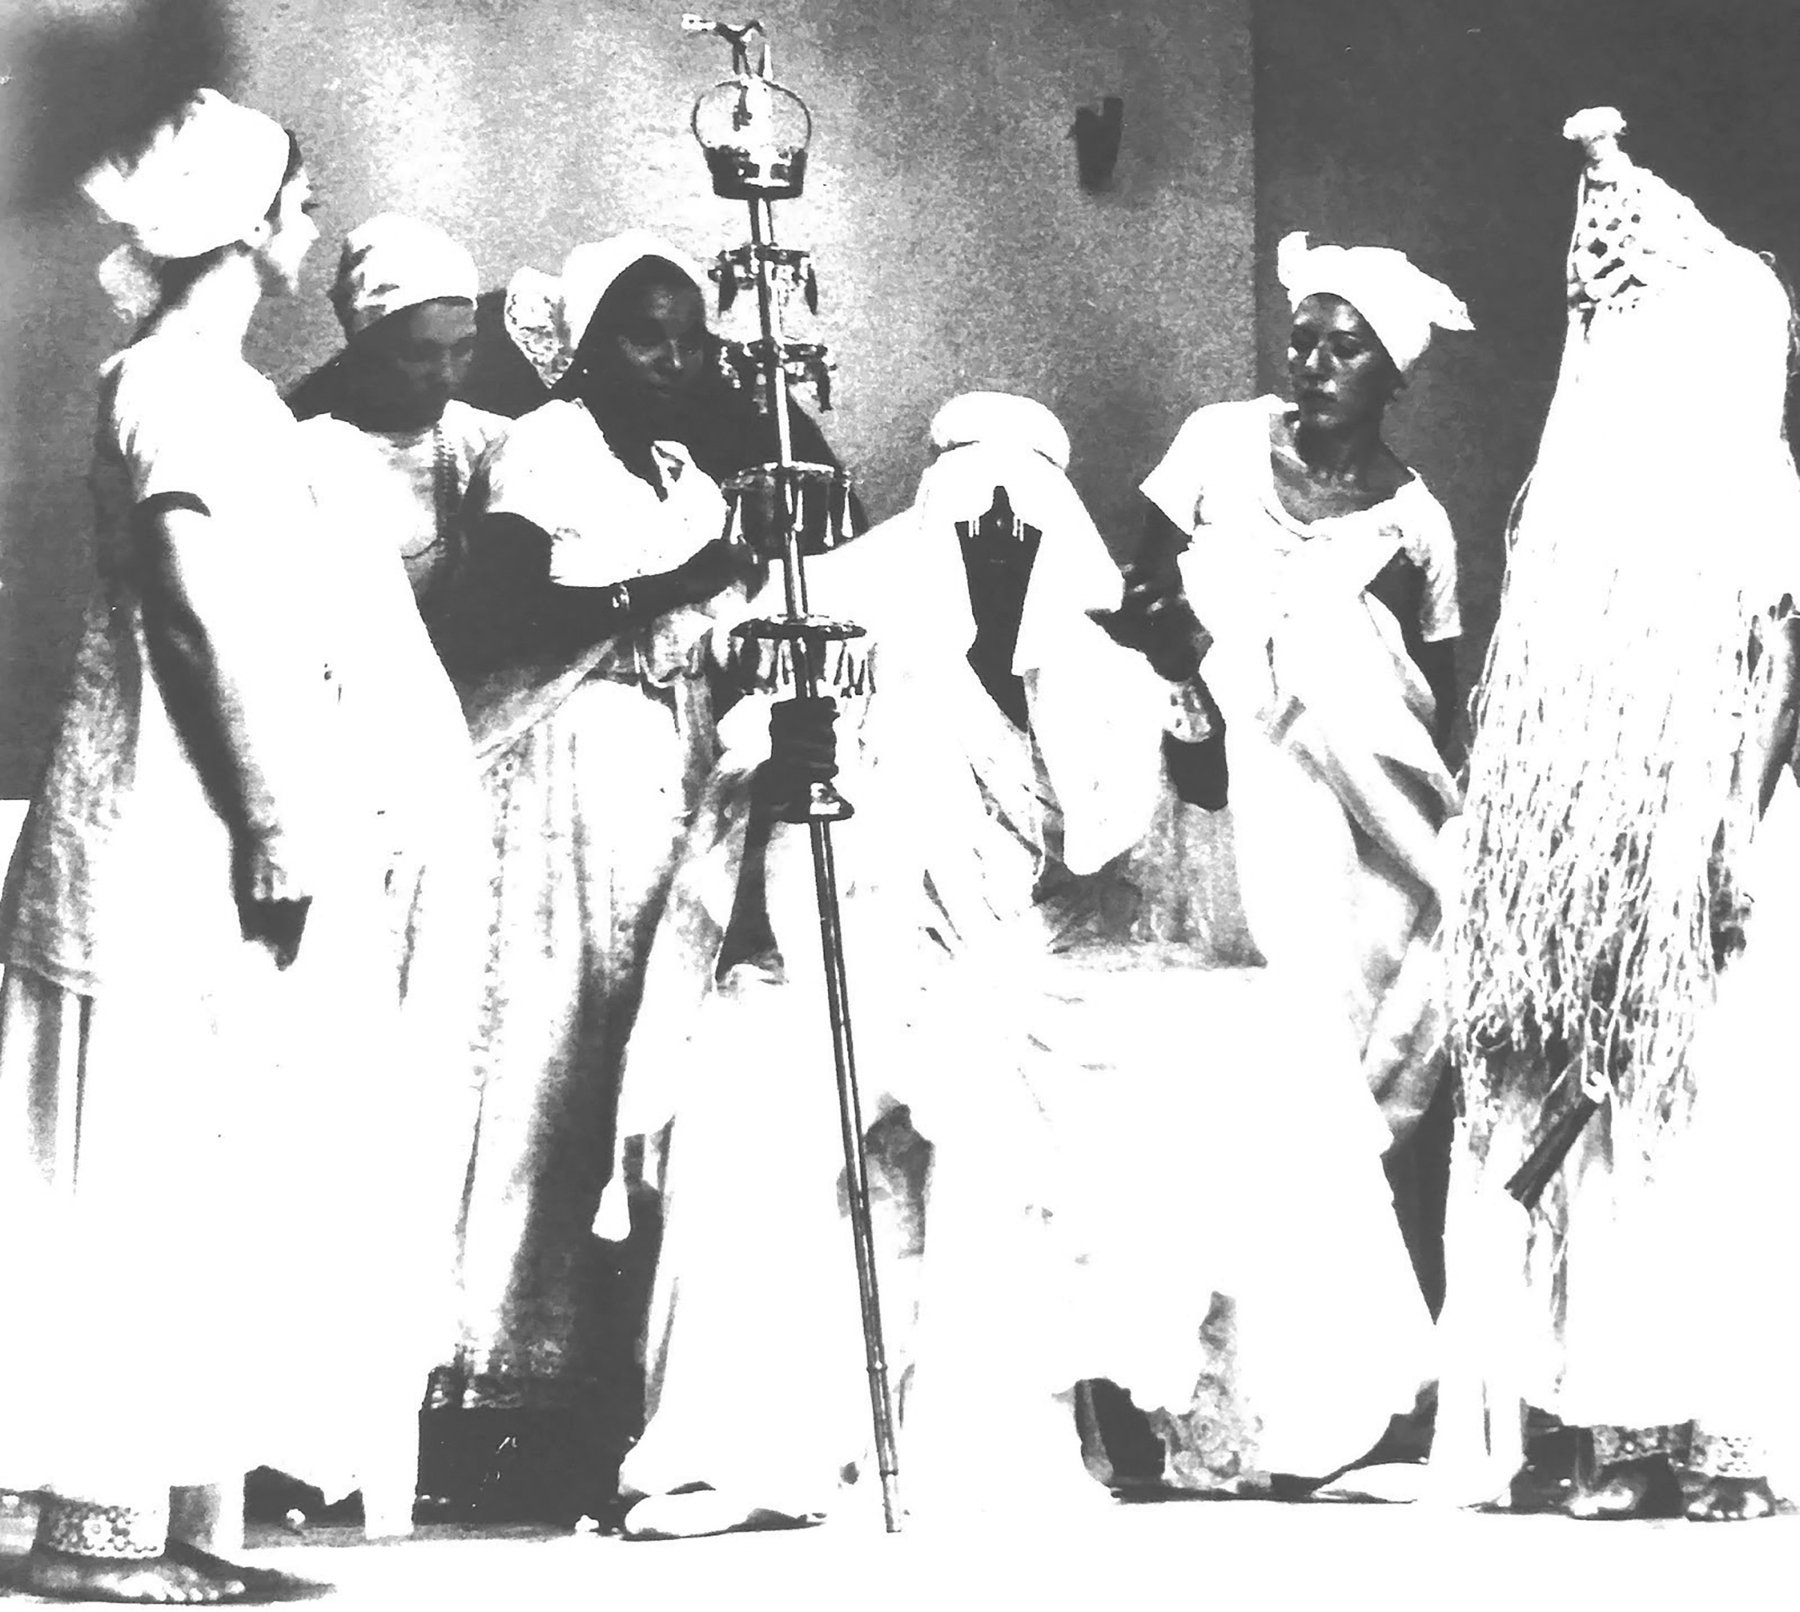 Fotografia em preto e branco. Espetáculo. Mulheres usam lenço na cabeça e vestido brancos. À direita, uma pessoa está com o rosto coberto por palha. Ao centro uma pessoa segura um cetro de metal.